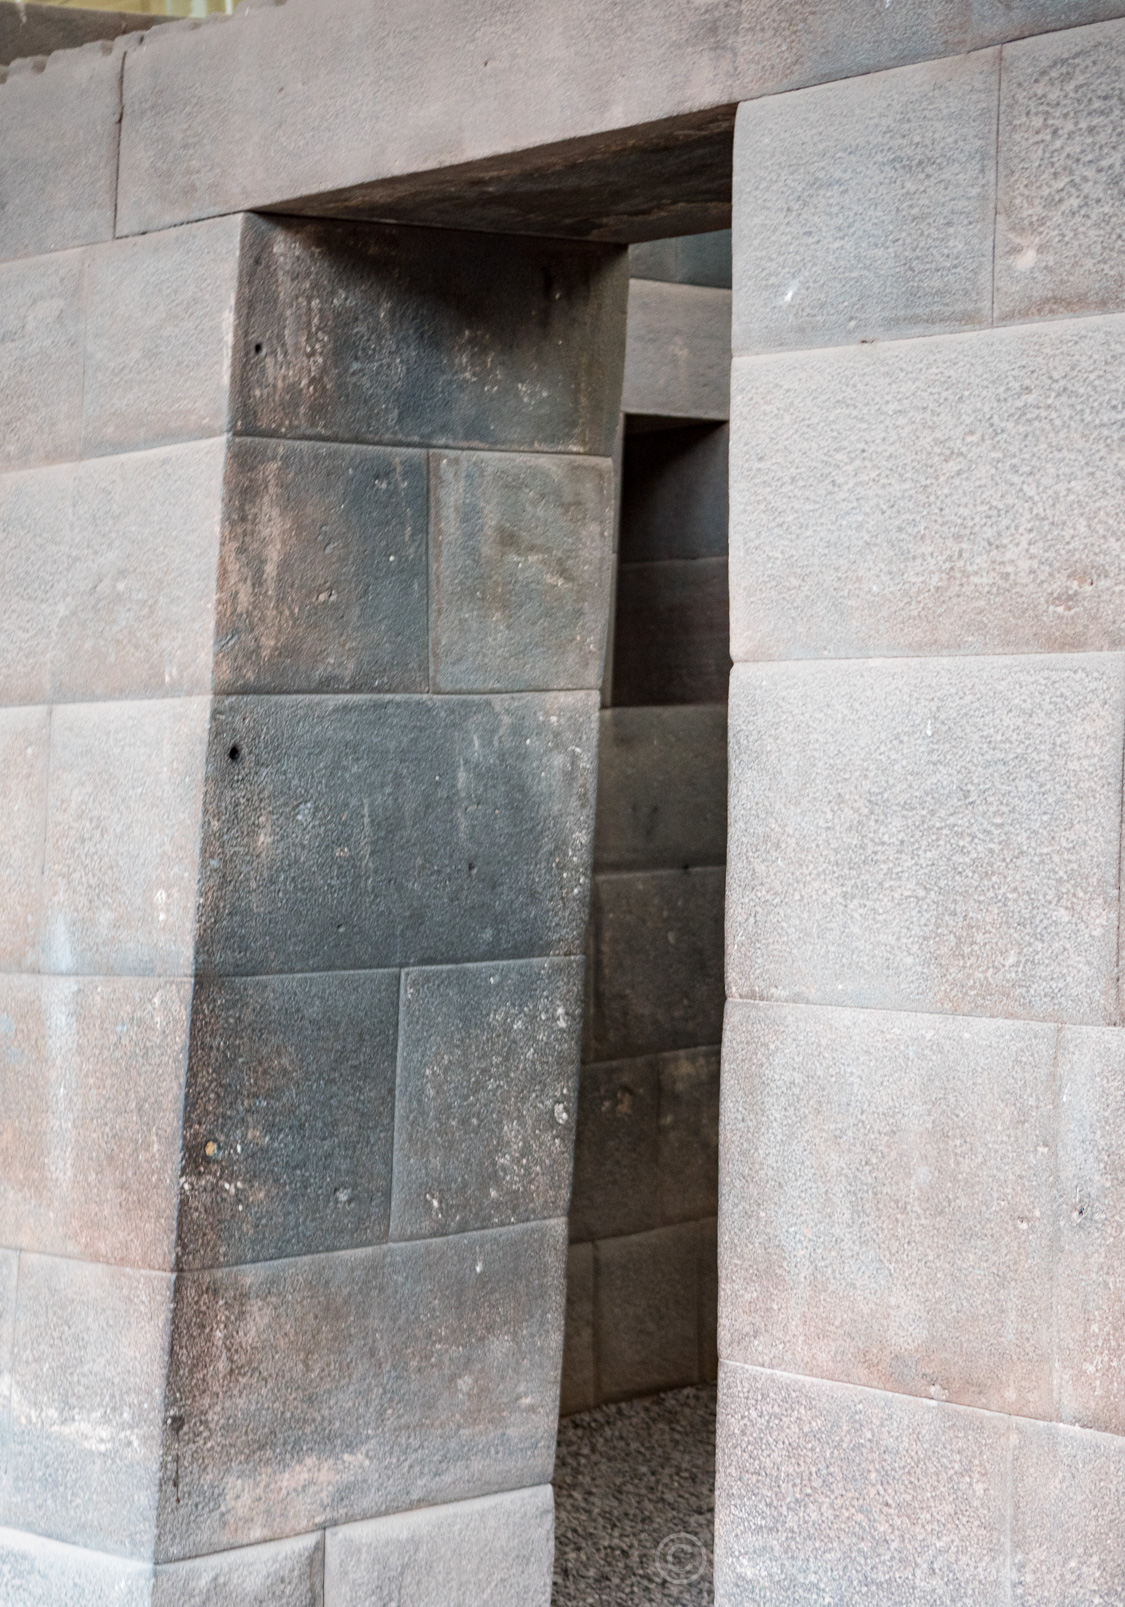 Le " Koricancha" (domaine de l'or) le temple du soleil, sanctuaire majeur autour duquel s'organisait l'ensemble de l'empire et de sa religion. 
Il fut le plus vaste et le plus richement orné de son époque : ses grands murs de pierre, en appareillage inca, mesuraient 140 m de long sur 135 m de large. 
À l'arrivée des Espagnols, il fut rasé et pillé de fond en comble. Les plaques d'or couvrant les murs furent arrachées et les momies des anciens Incas profanées. Il ne resta debout que les fondations qui, peu après, servirent d'assise à la construction de l'église et du couvent Santo Domingo.